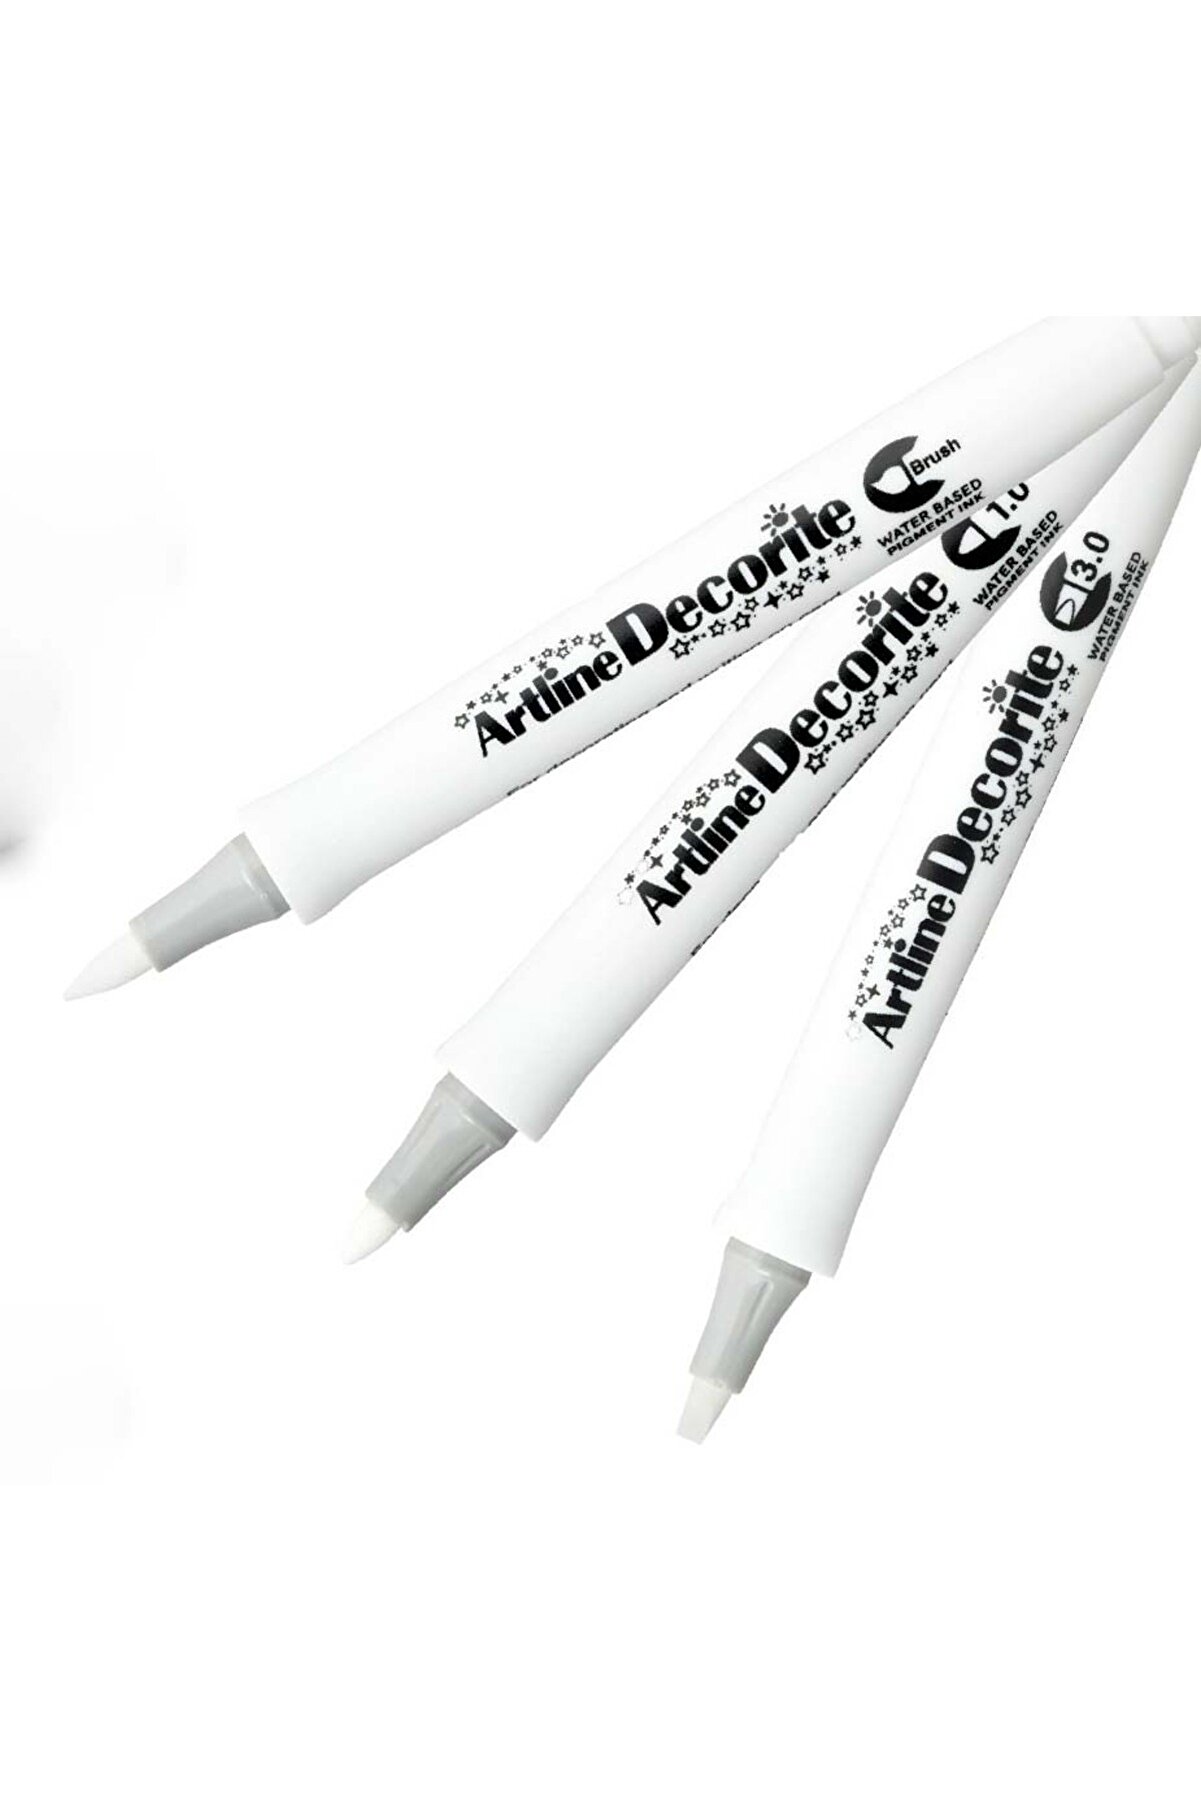 artline Decorite Brush Marker Su Bazlı Kalem 3'lü Set - Beyaz Renkler